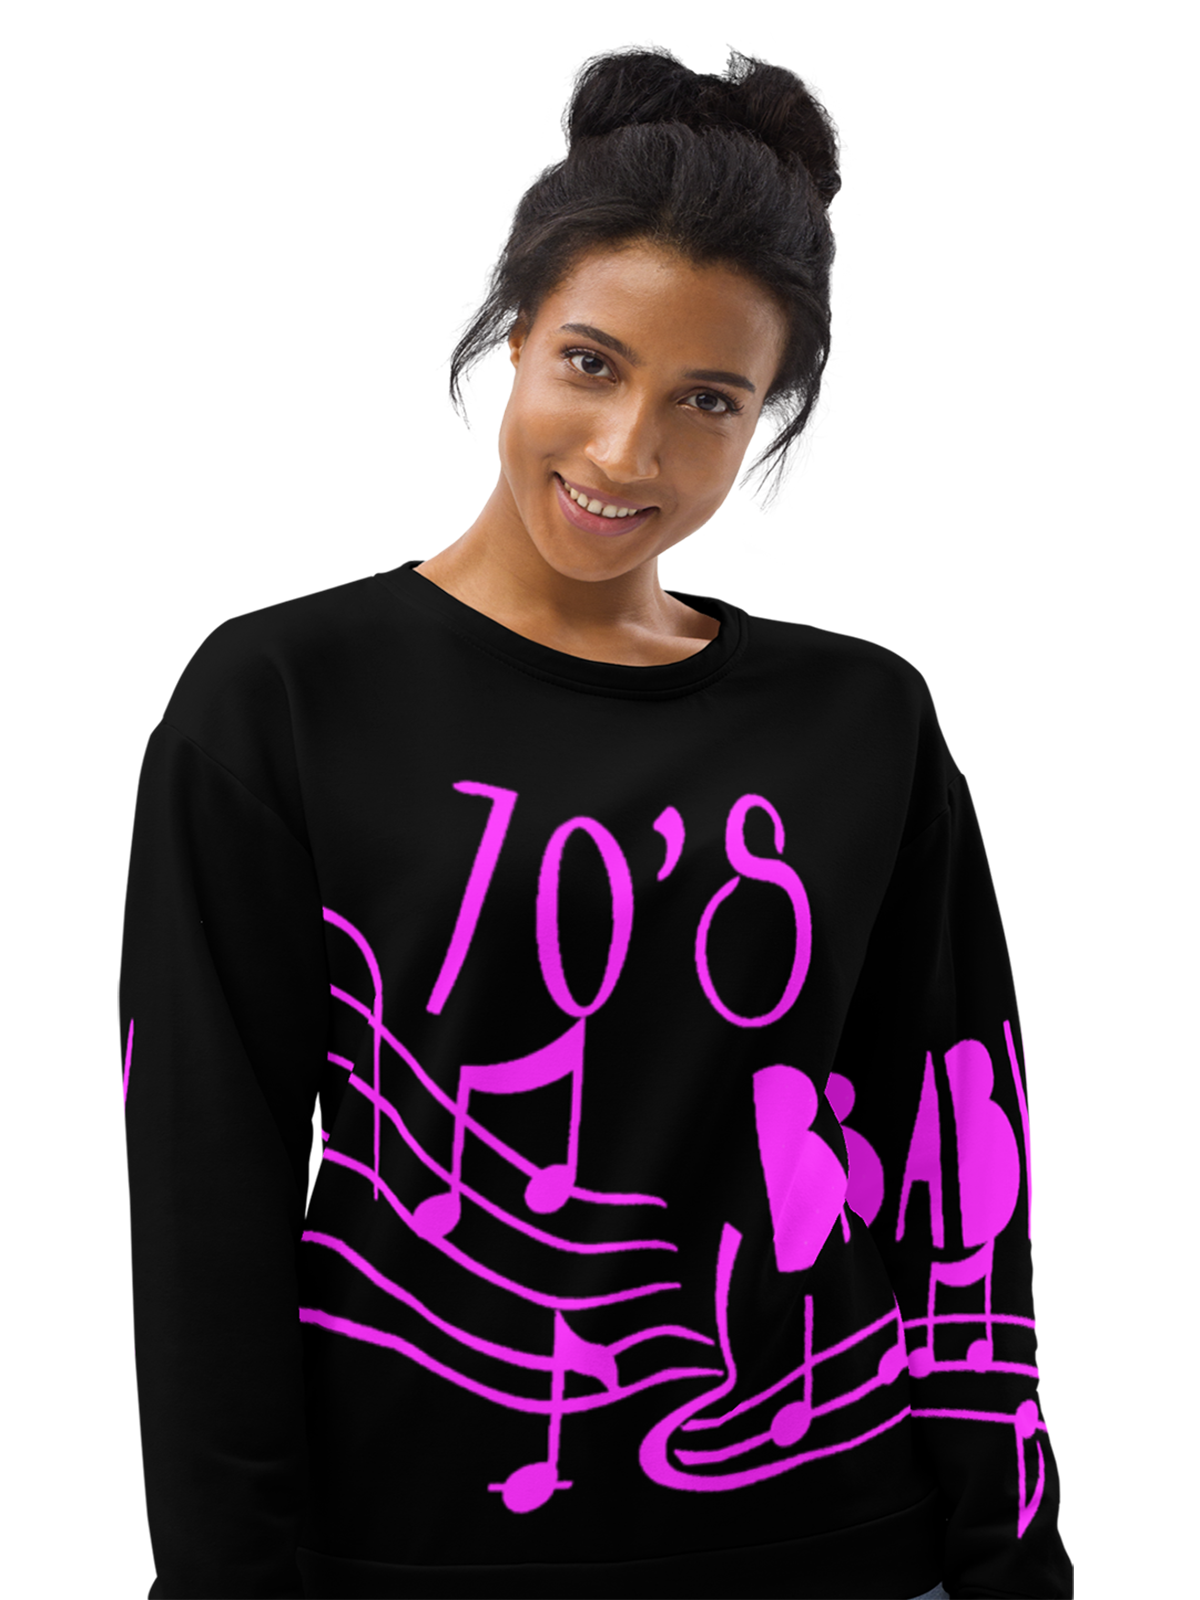 70s | 80s | 90s | 2000s | Millennials - Sweatshirt